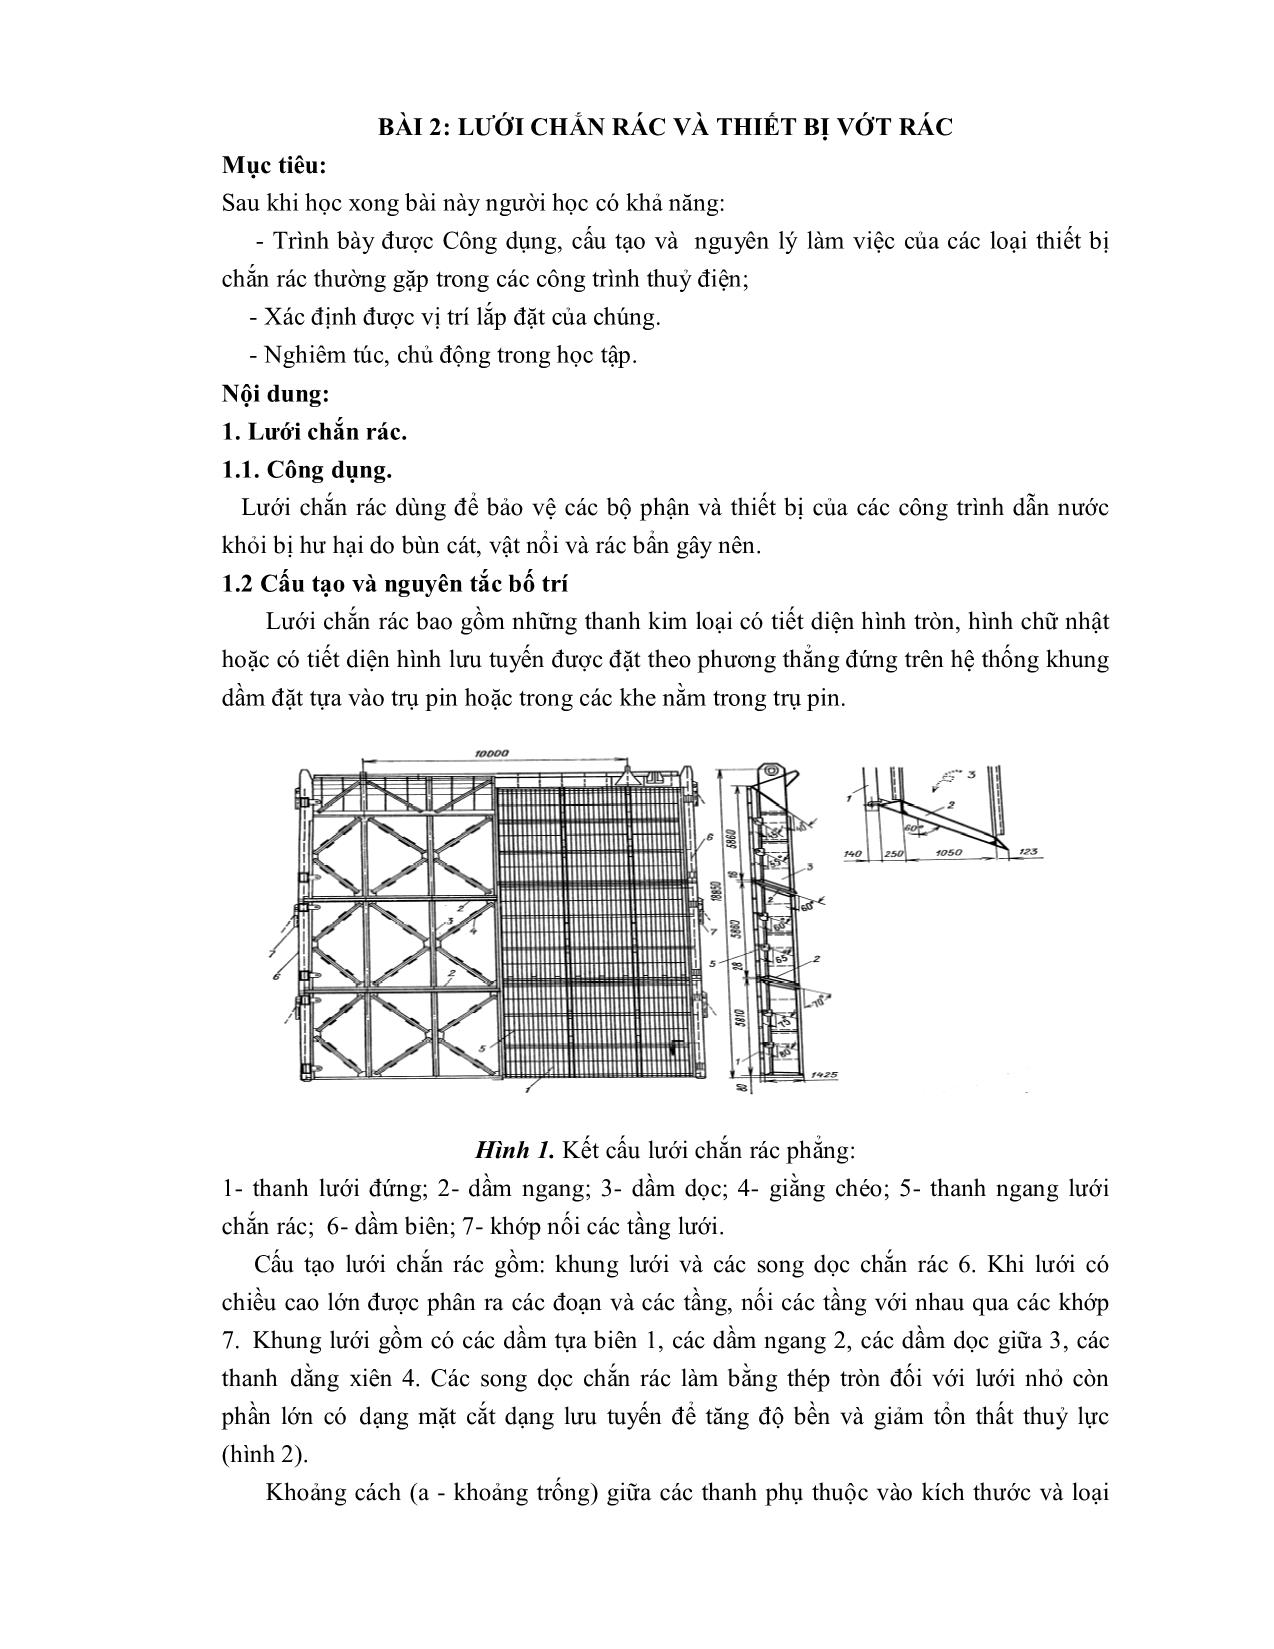 Giáo trình Thủy công - Nghề: Vận hành thủy điện trang 9